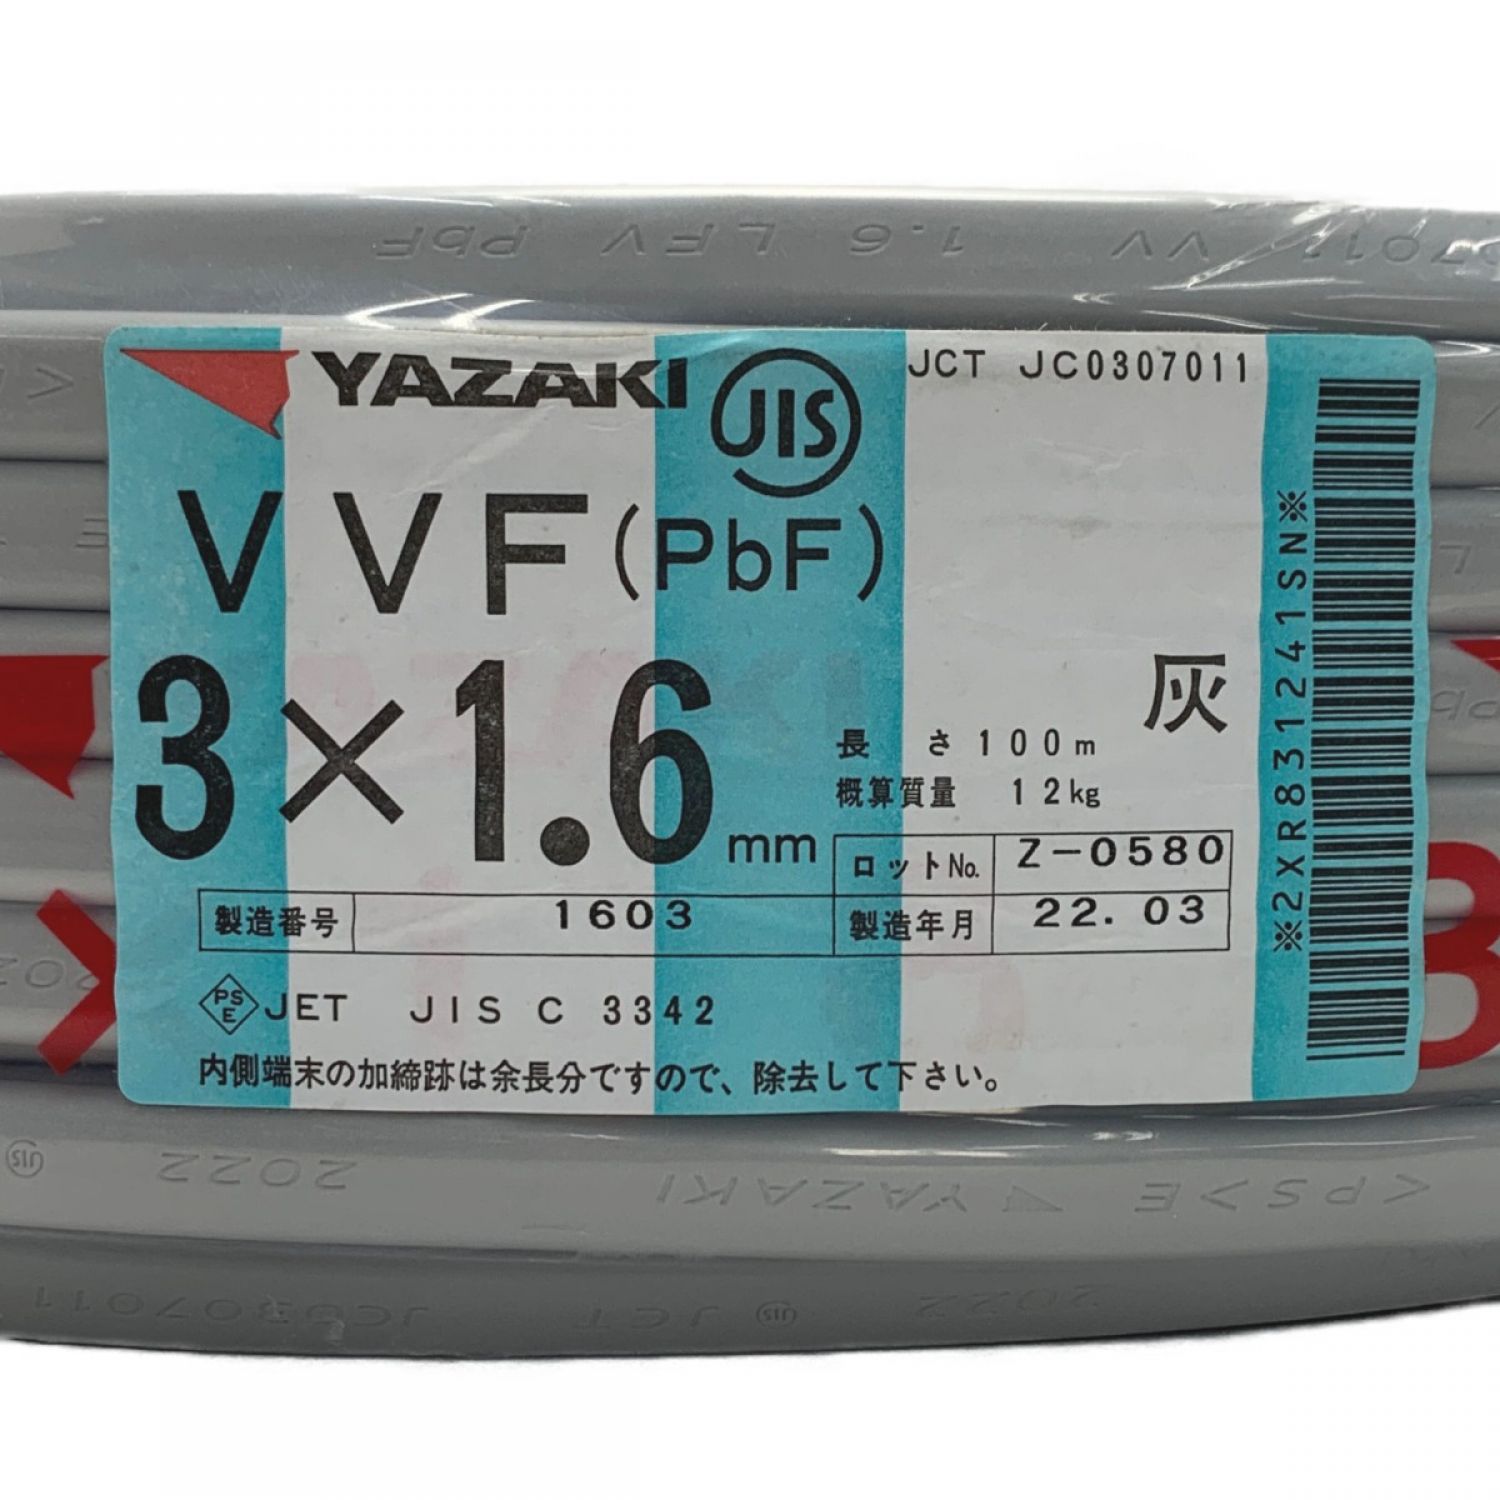 ΦΦYAZAKI VVFケーブル 平形 100m巻 灰色 VVF3×1.6 3芯 0356